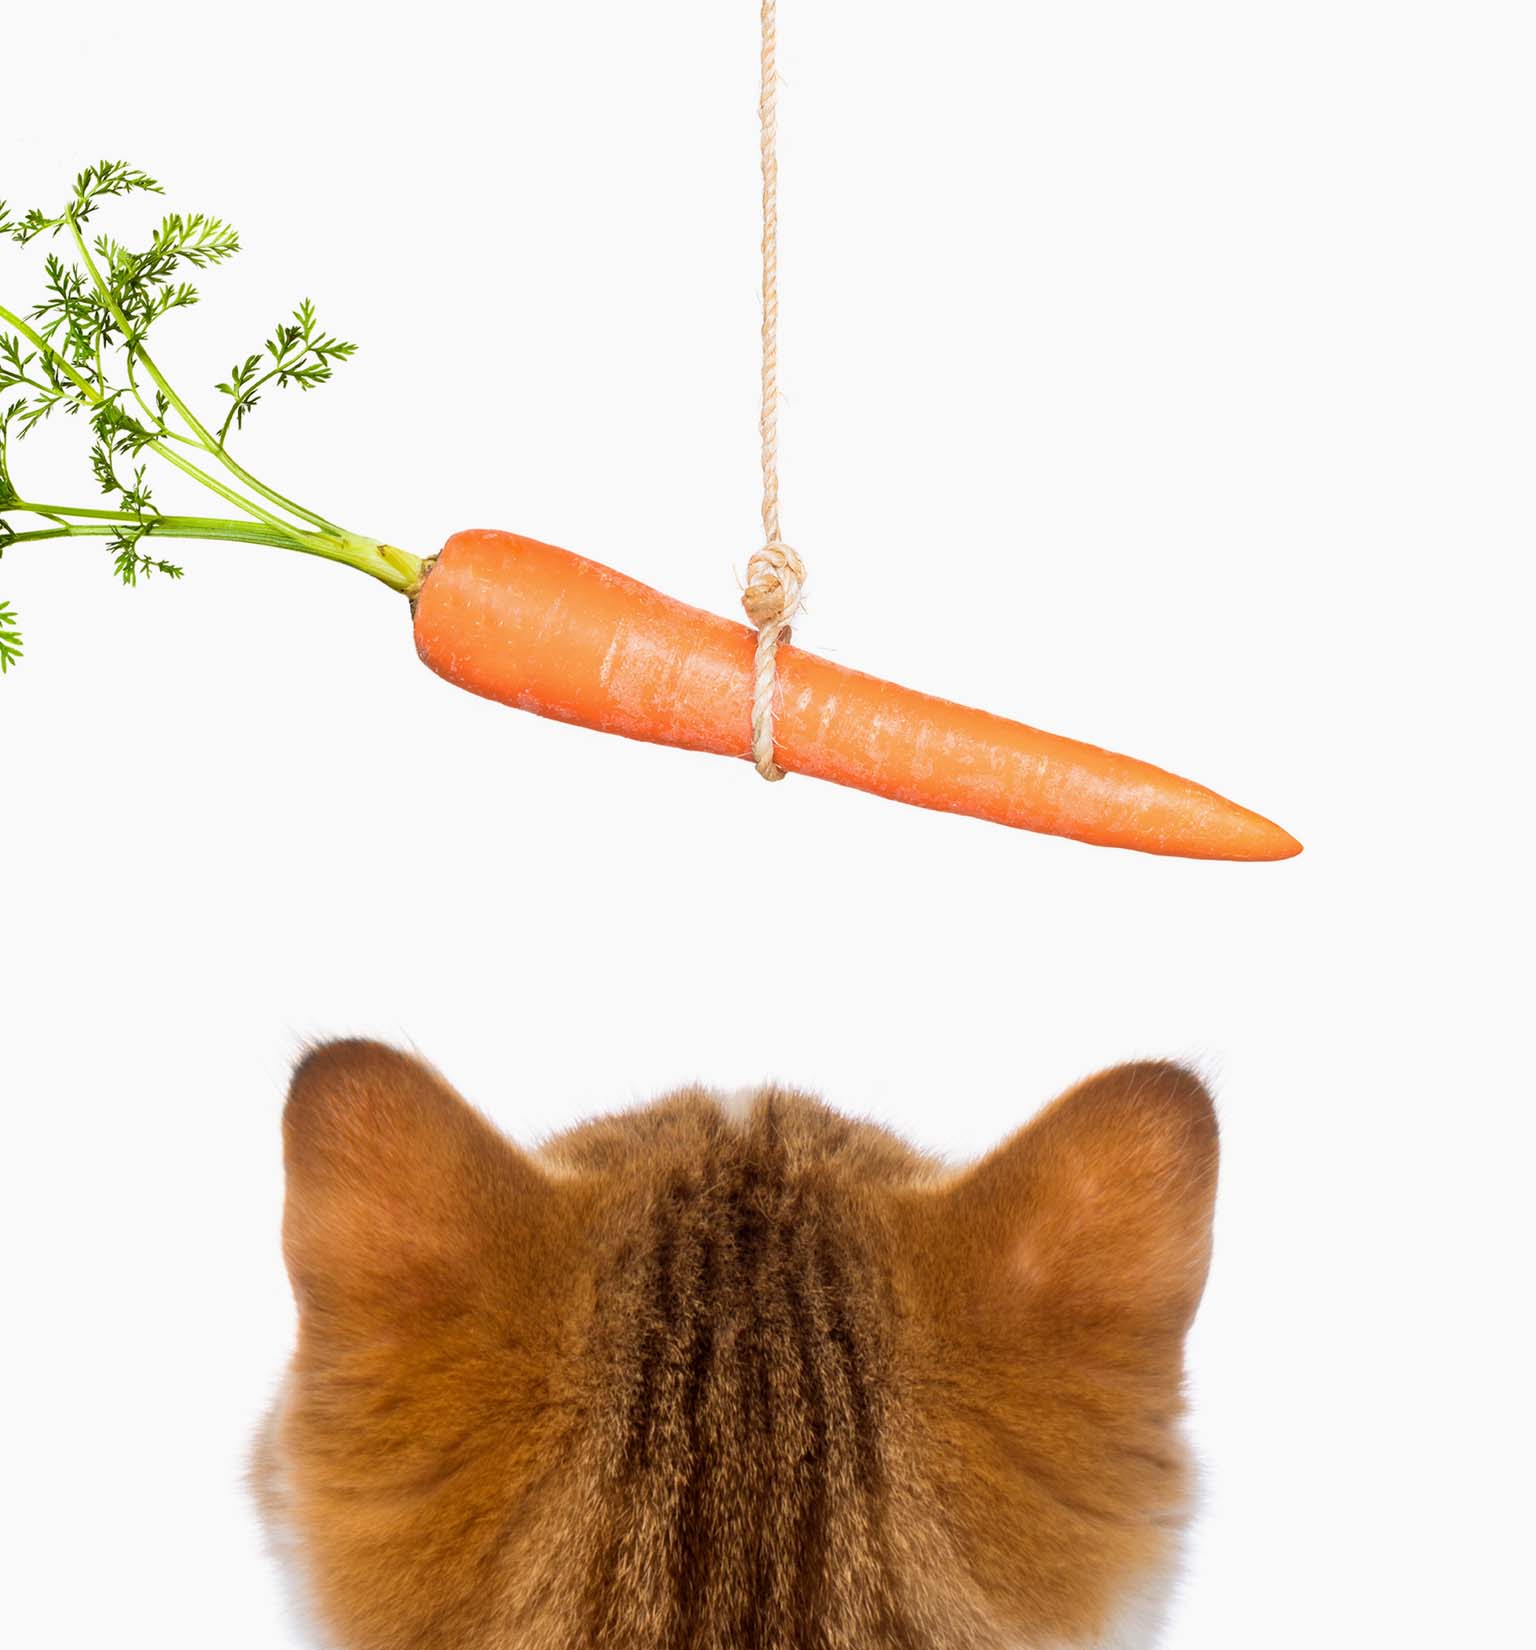 A cenoura é boa para o meu gato?